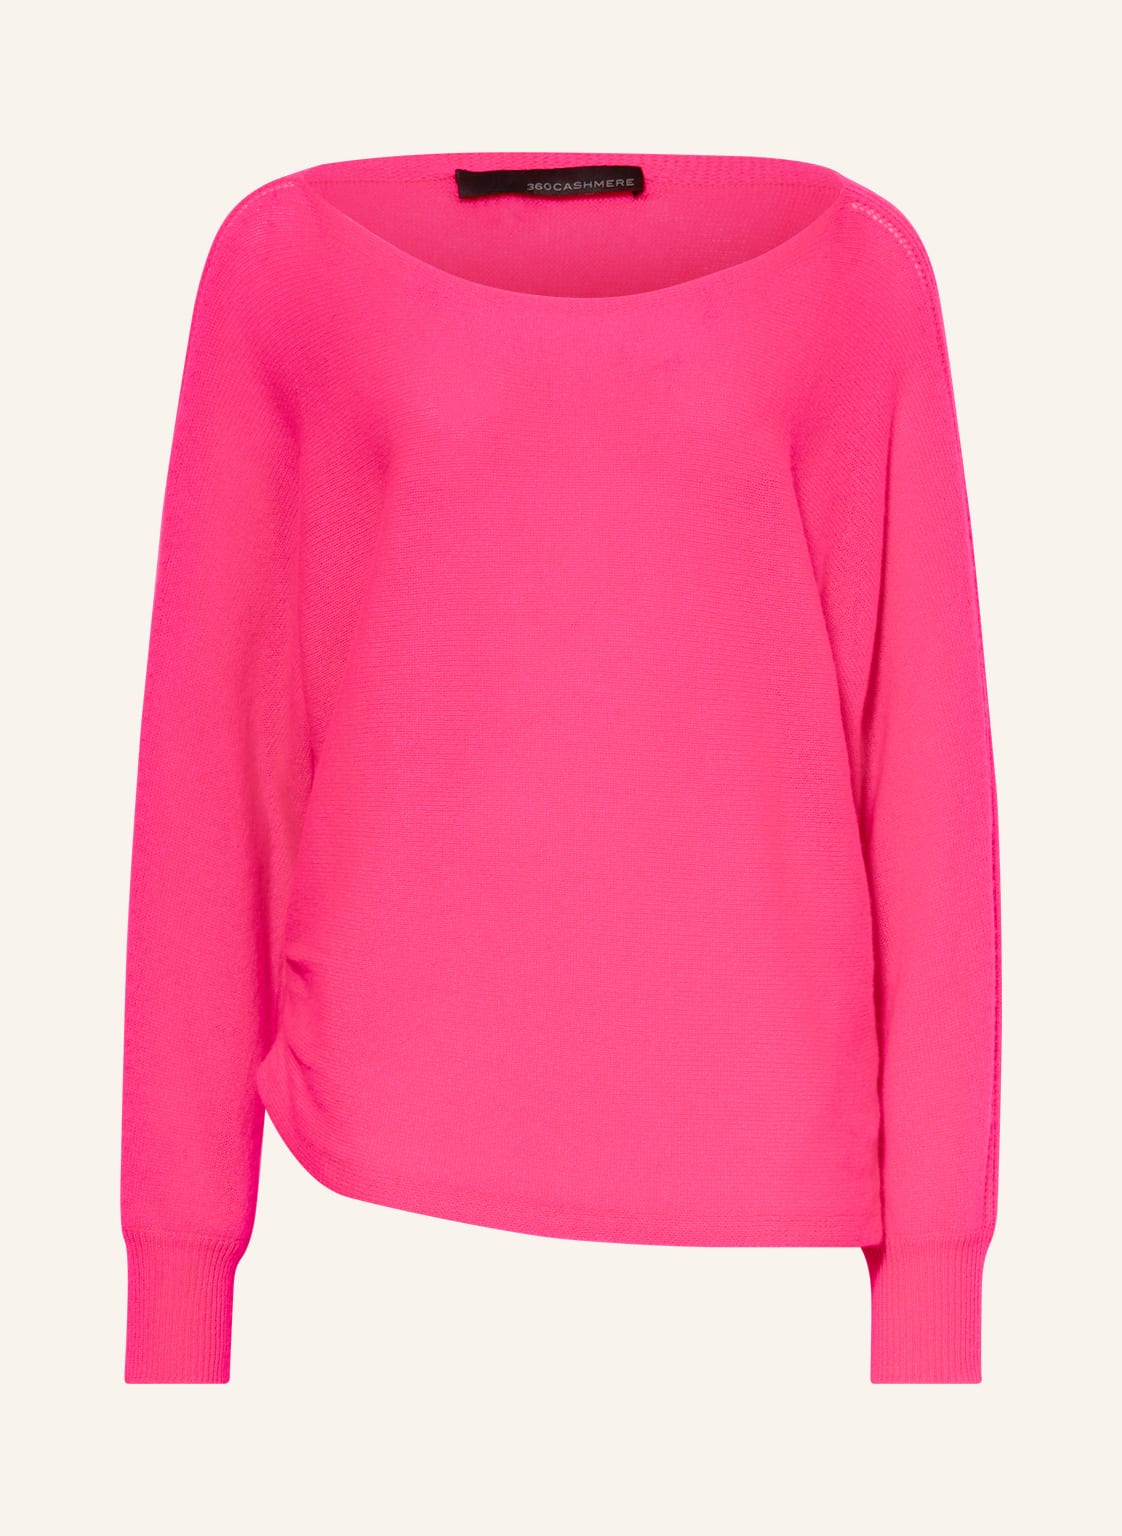 360cashmere Cashmere-Pullover Marylin pink von 360cashmere